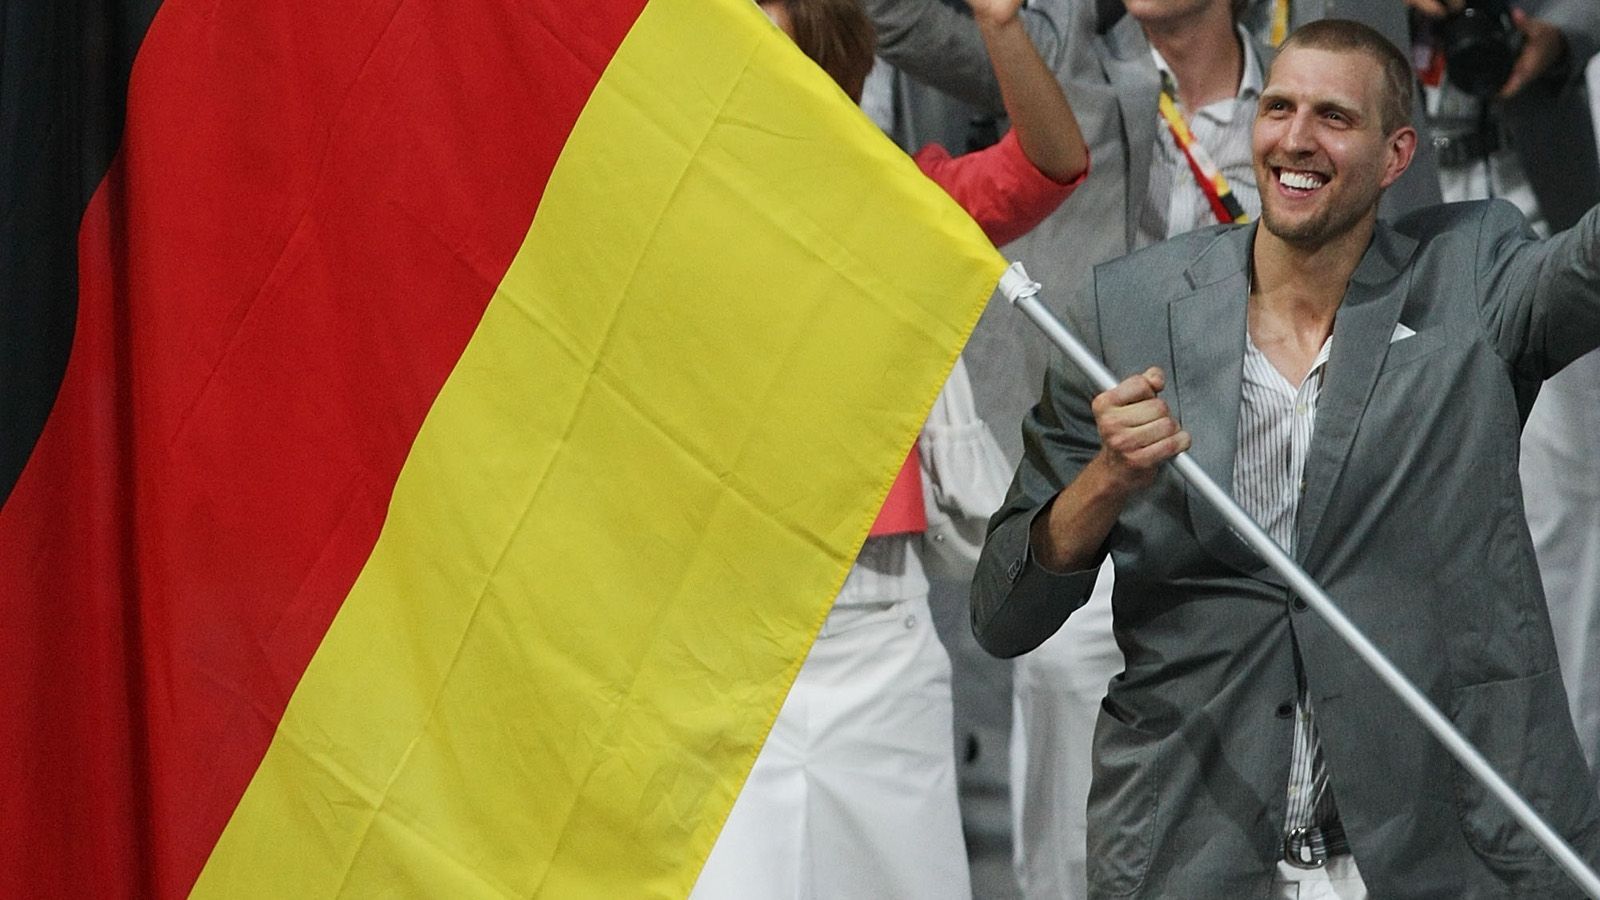 
                <strong>Dirk Nowitzki: Die Meilensteine seiner Karriere</strong><br>
                Bei den Olympischen Spielen 2008 scheidet die deutsche Nationalmannschaft bereits in der Gruppenphase aus, von den USA werden Nowitzki und Co. beim 57:106 böse verprügelt. Aber: Für Nowitzki ist es ein Höhepunkt seiner Karriere, die deutsche Olympia-Mannschaft als Fahnenträger anzuführen.
              